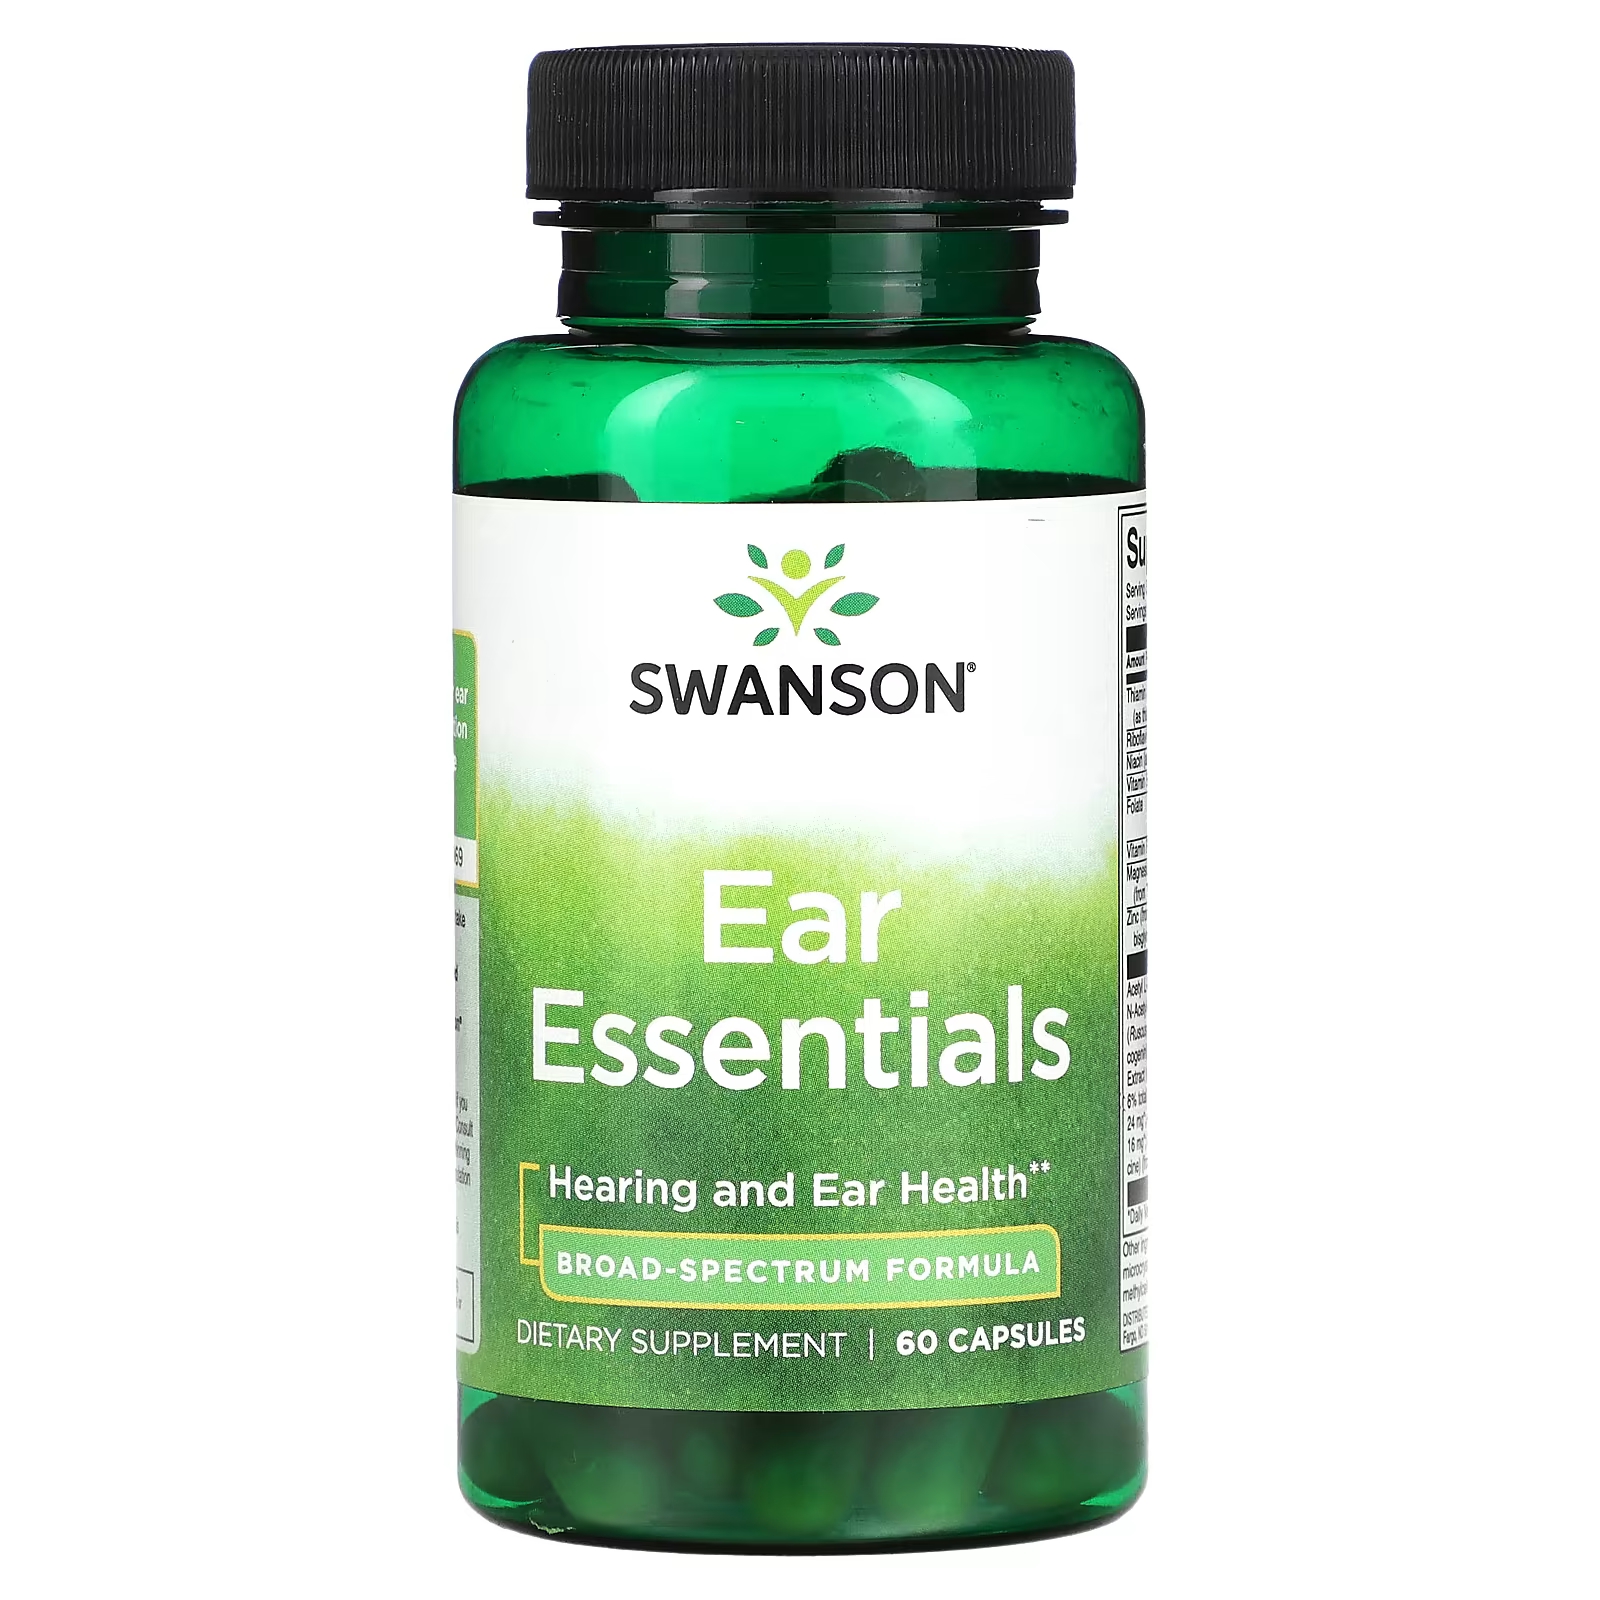 Пищевая добавка Swanson Ear Essentials, 60 капсул пищевая добавка swanson probiotic 4 3 billion cfu 60 капсул